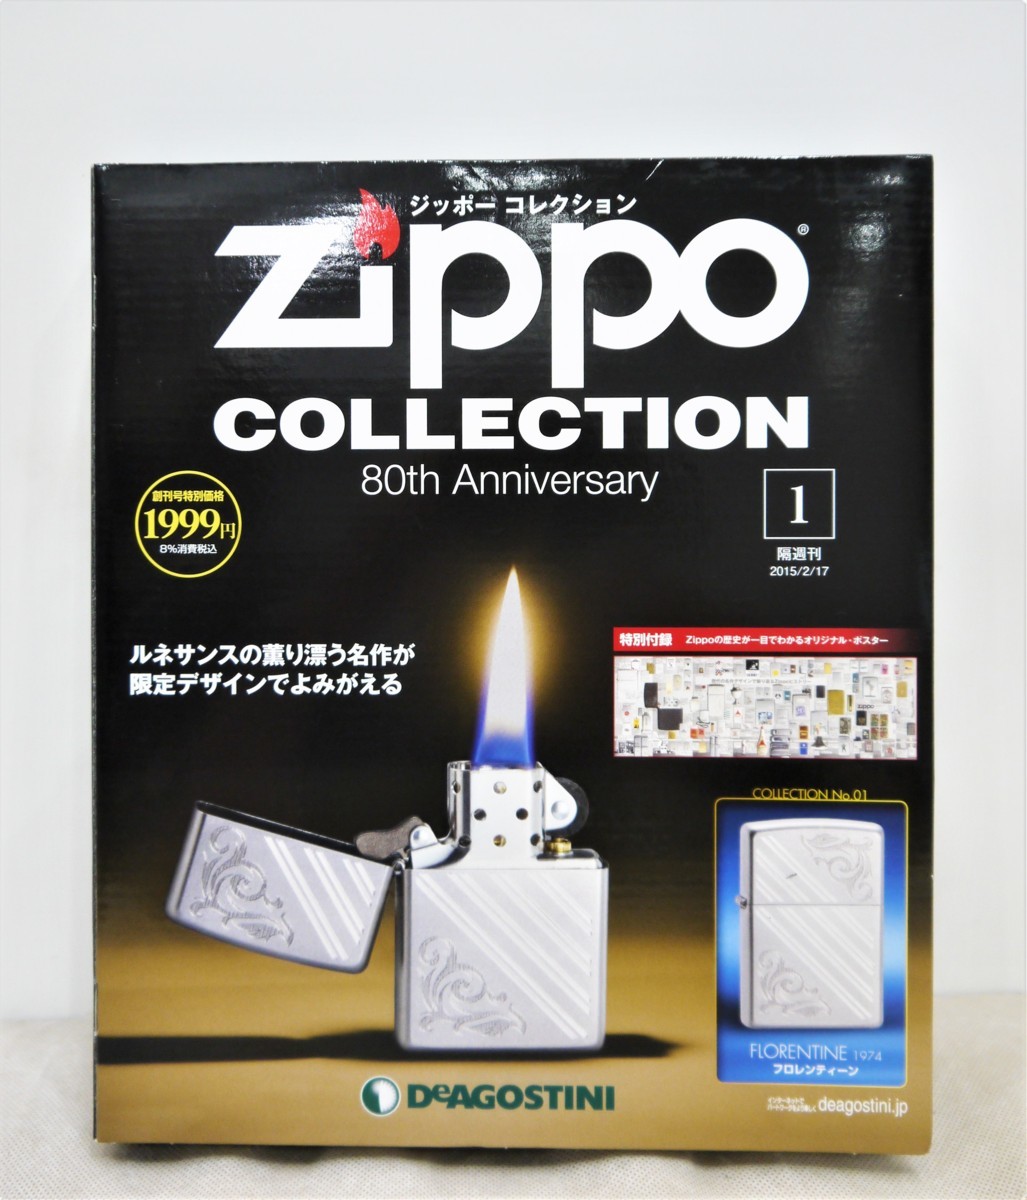 ジッポー コレクション 80th Anniversary vol.1 ZIPPO デアゴスティーニ DeAGOSTINI ライター ジッポ